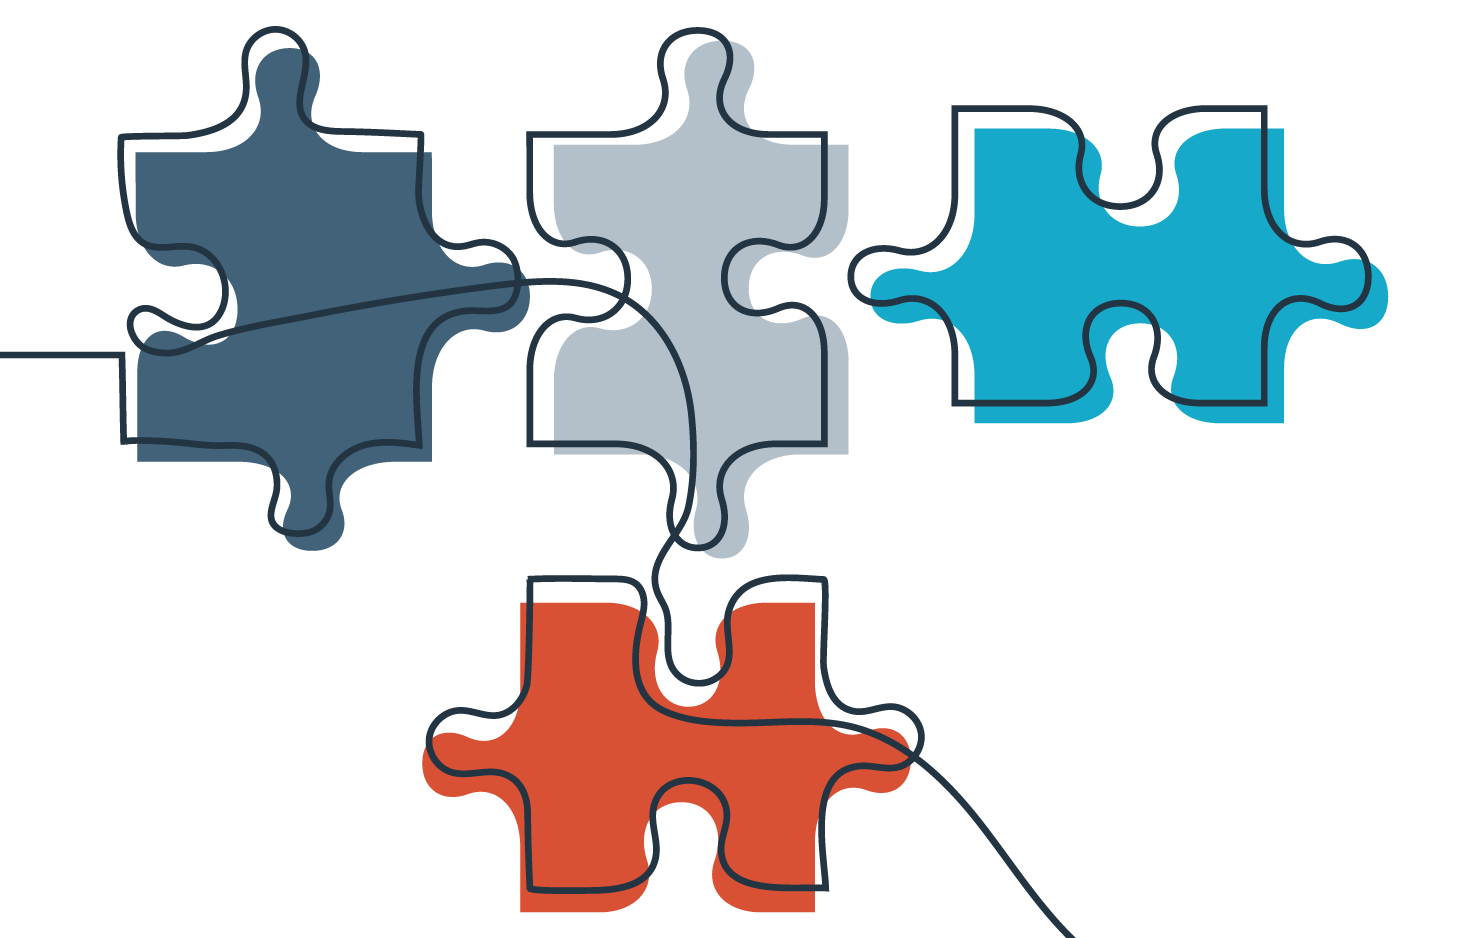 Symbolbild für Barrierefreiheit, zeigt vier Puzzle-Teile die miteinenader mit einer Linie verbunden sind